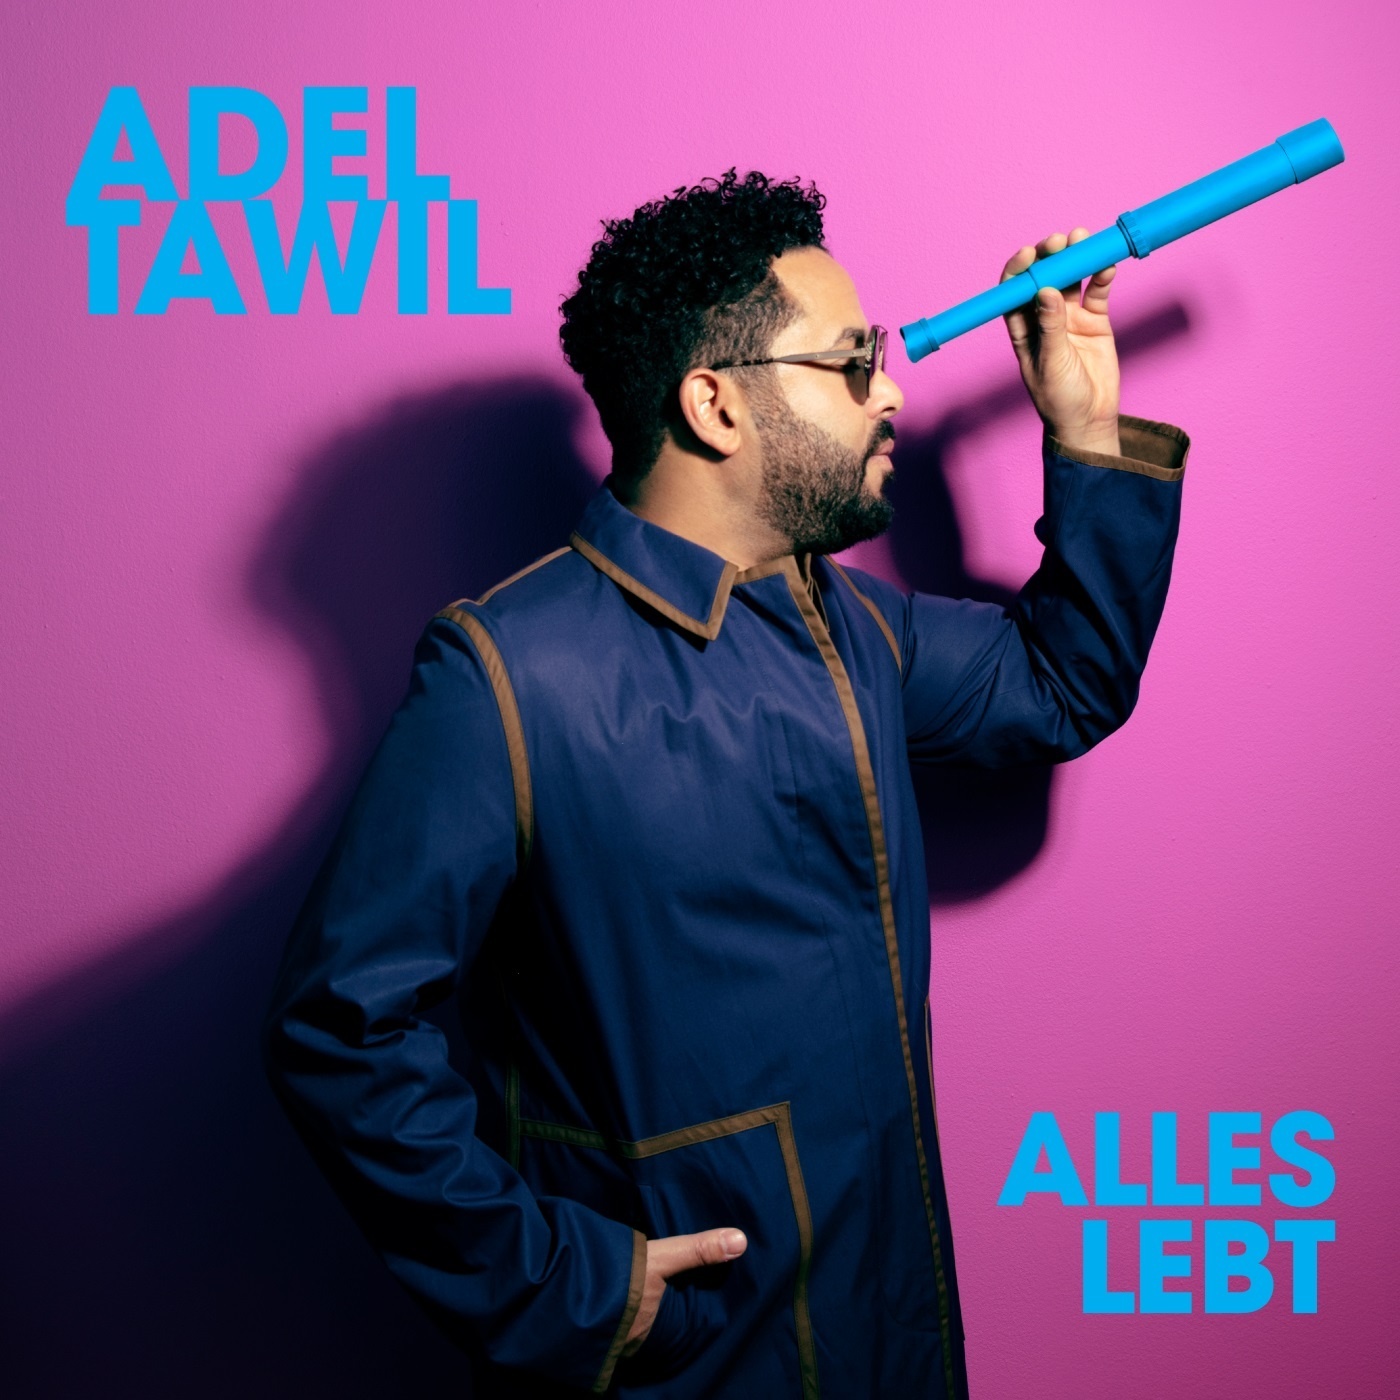 Alles lebt - Adel Tawil. (CD)